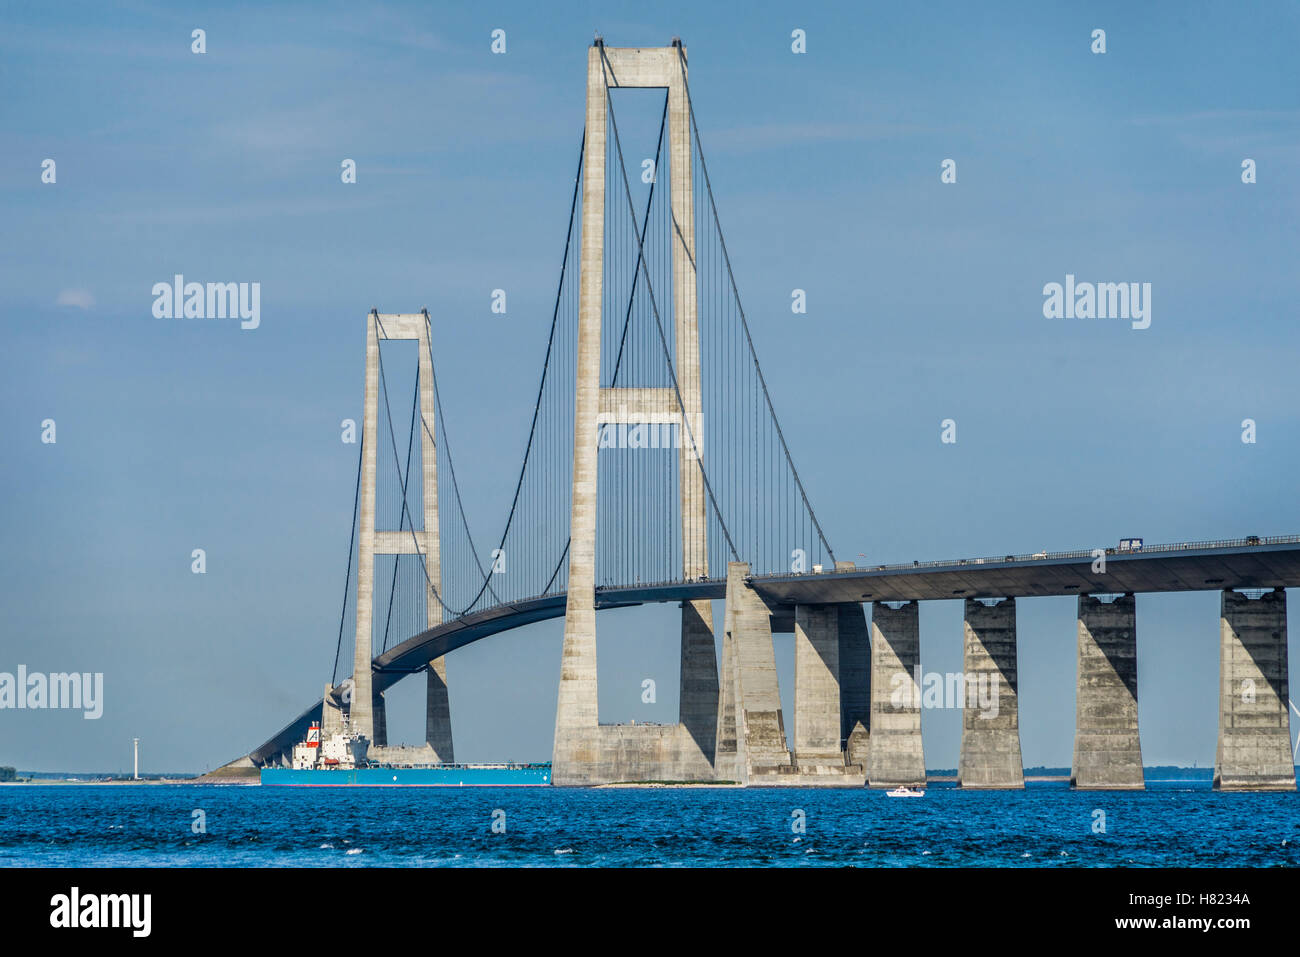 Dänemark, große-Belt-Brücke verbindet die Inseln Fünen und Seeland über den großen Belt, die Aussetzung und Box Träger bri Stockfoto